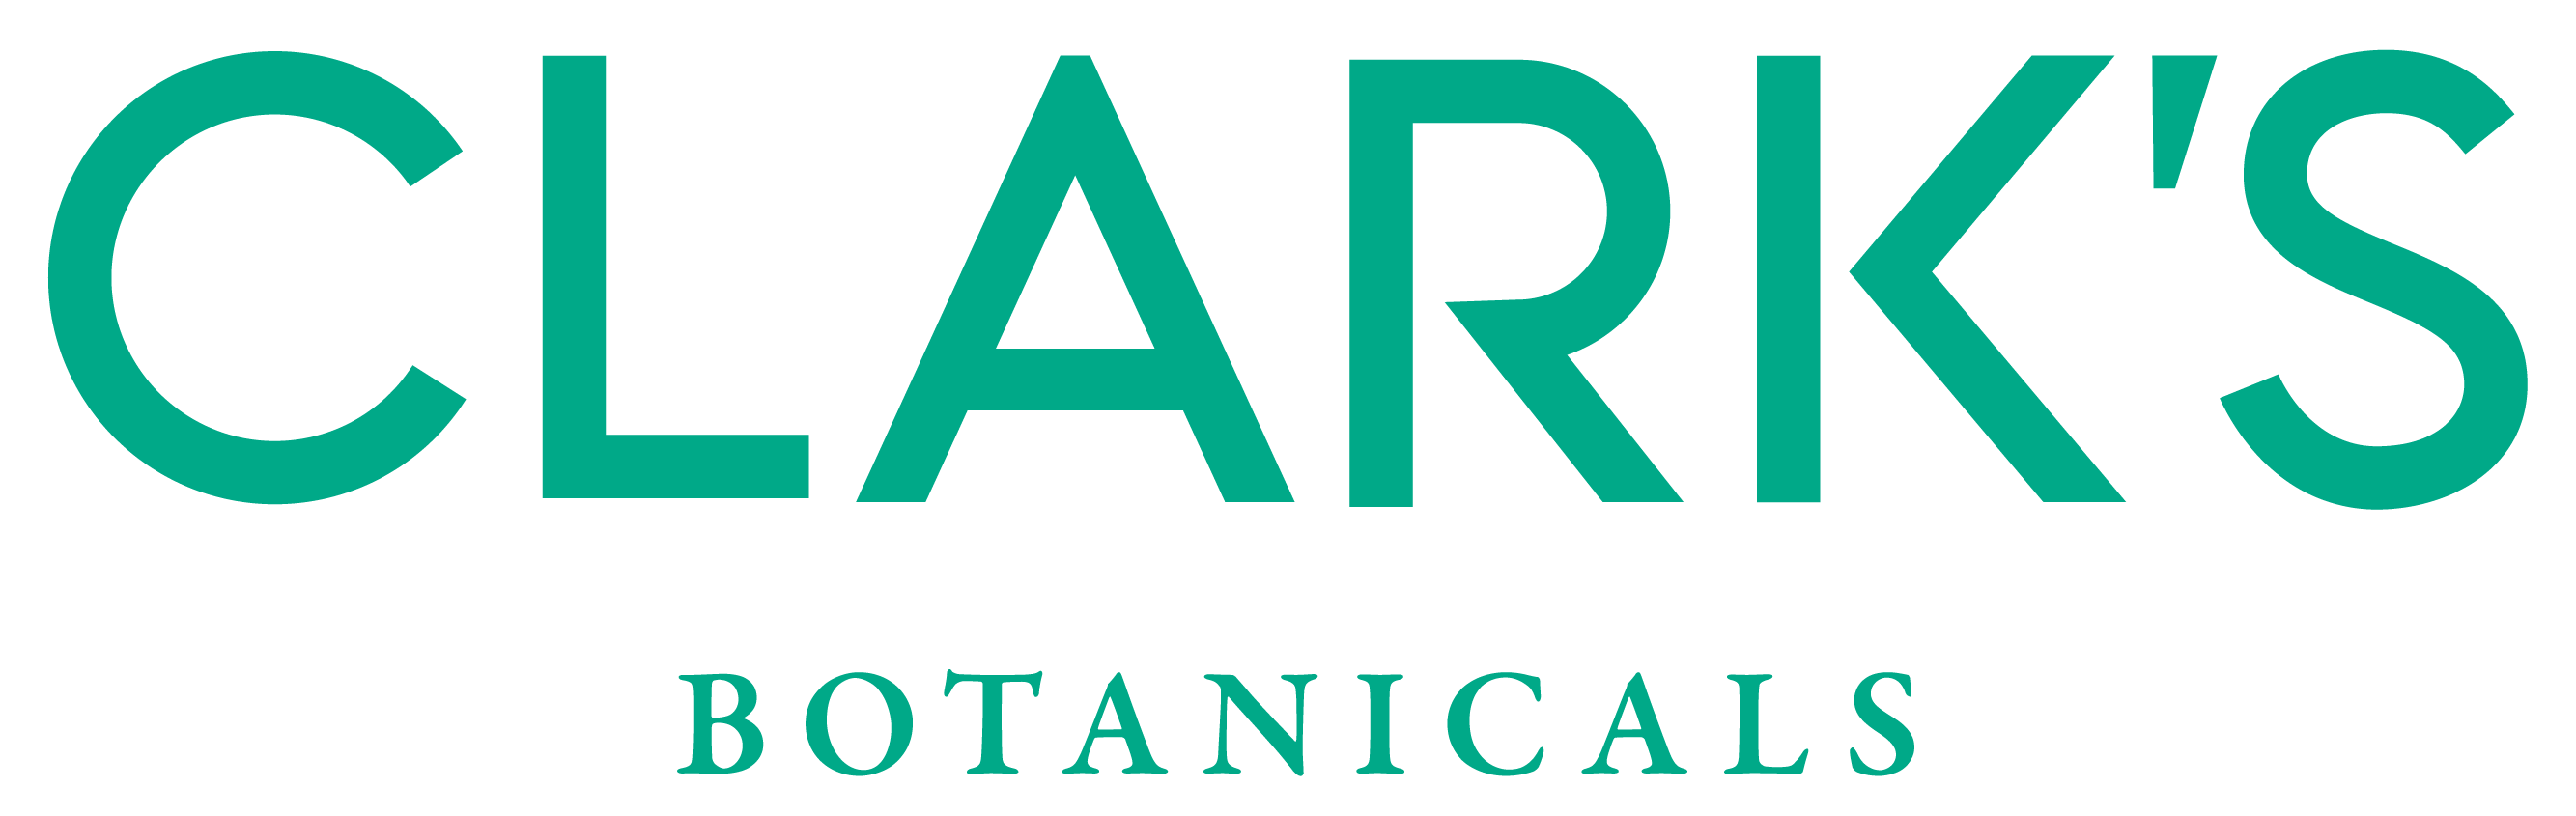 Clark's Botanicals coupons logo